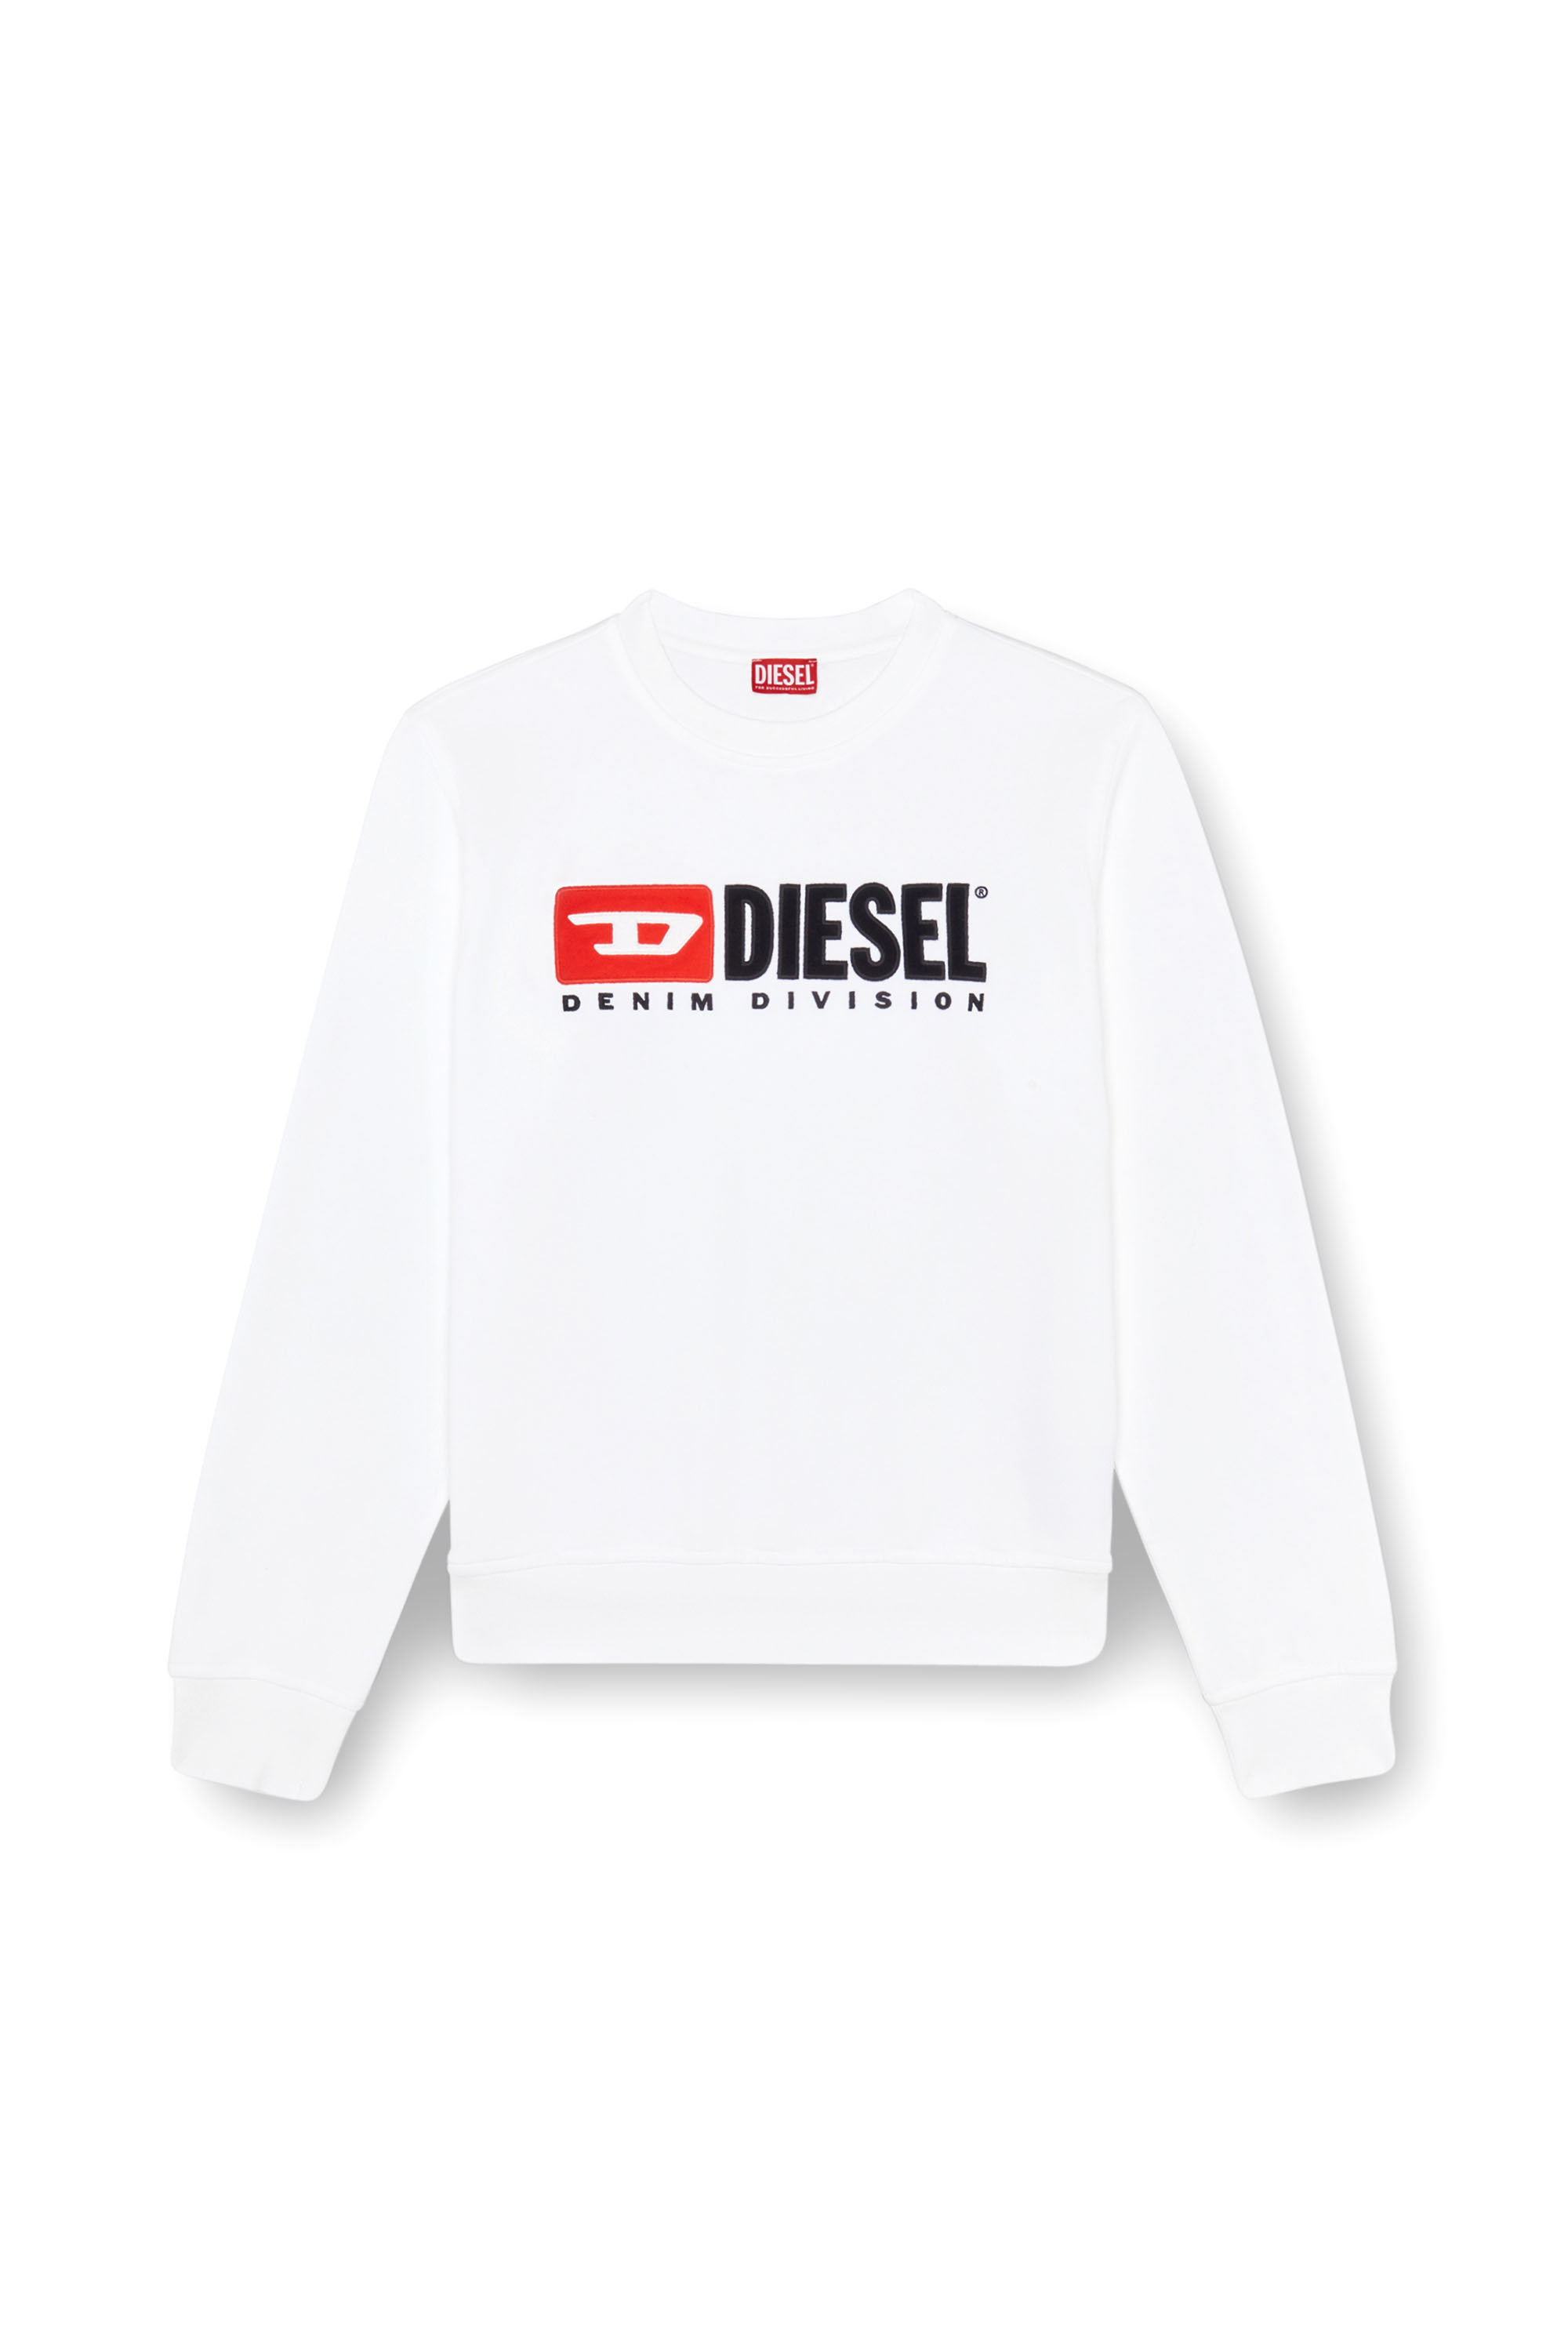 Diesel - S-BOXT-DIV, Uomo Felpa con logo Denim Division in Bianco - Image 3